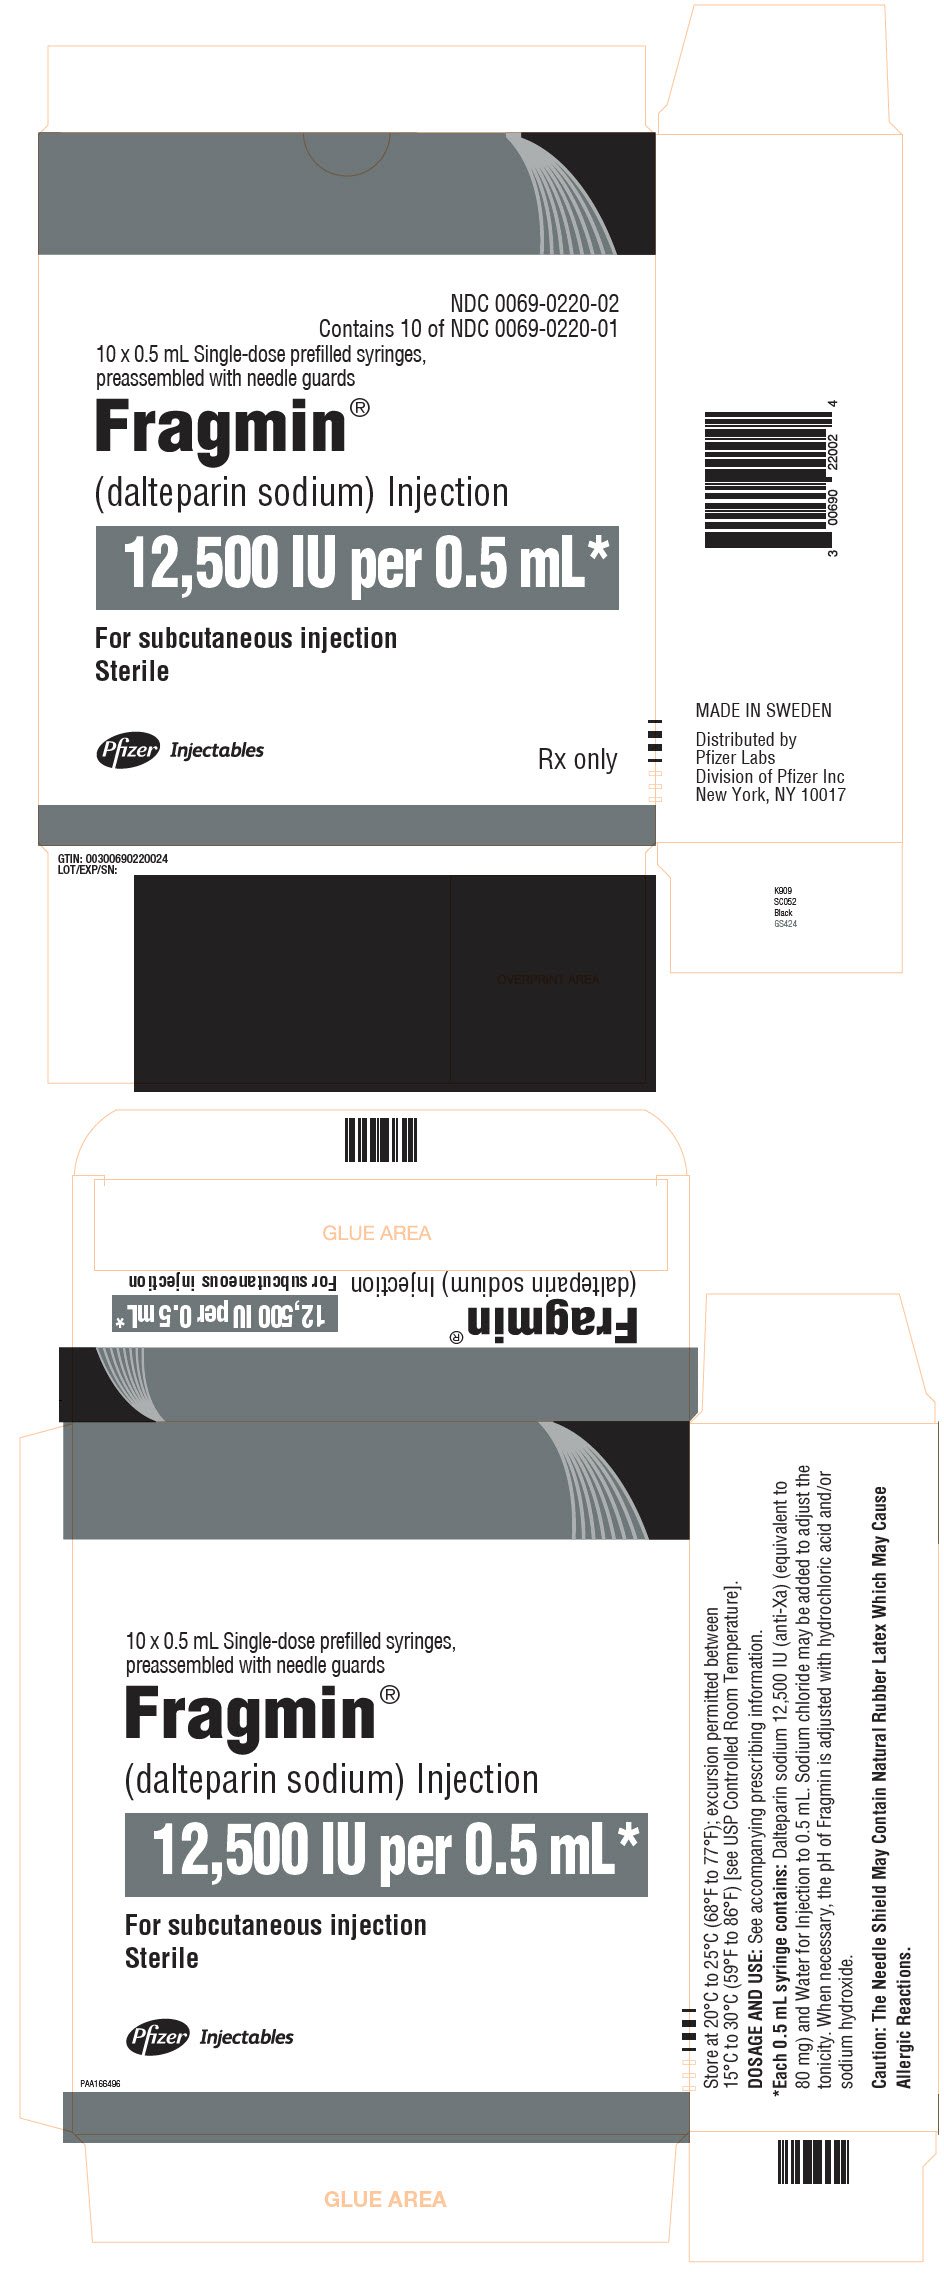 PRINCIPAL DISPLAY PANEL - 0.5 mL Syringe Carton - 022